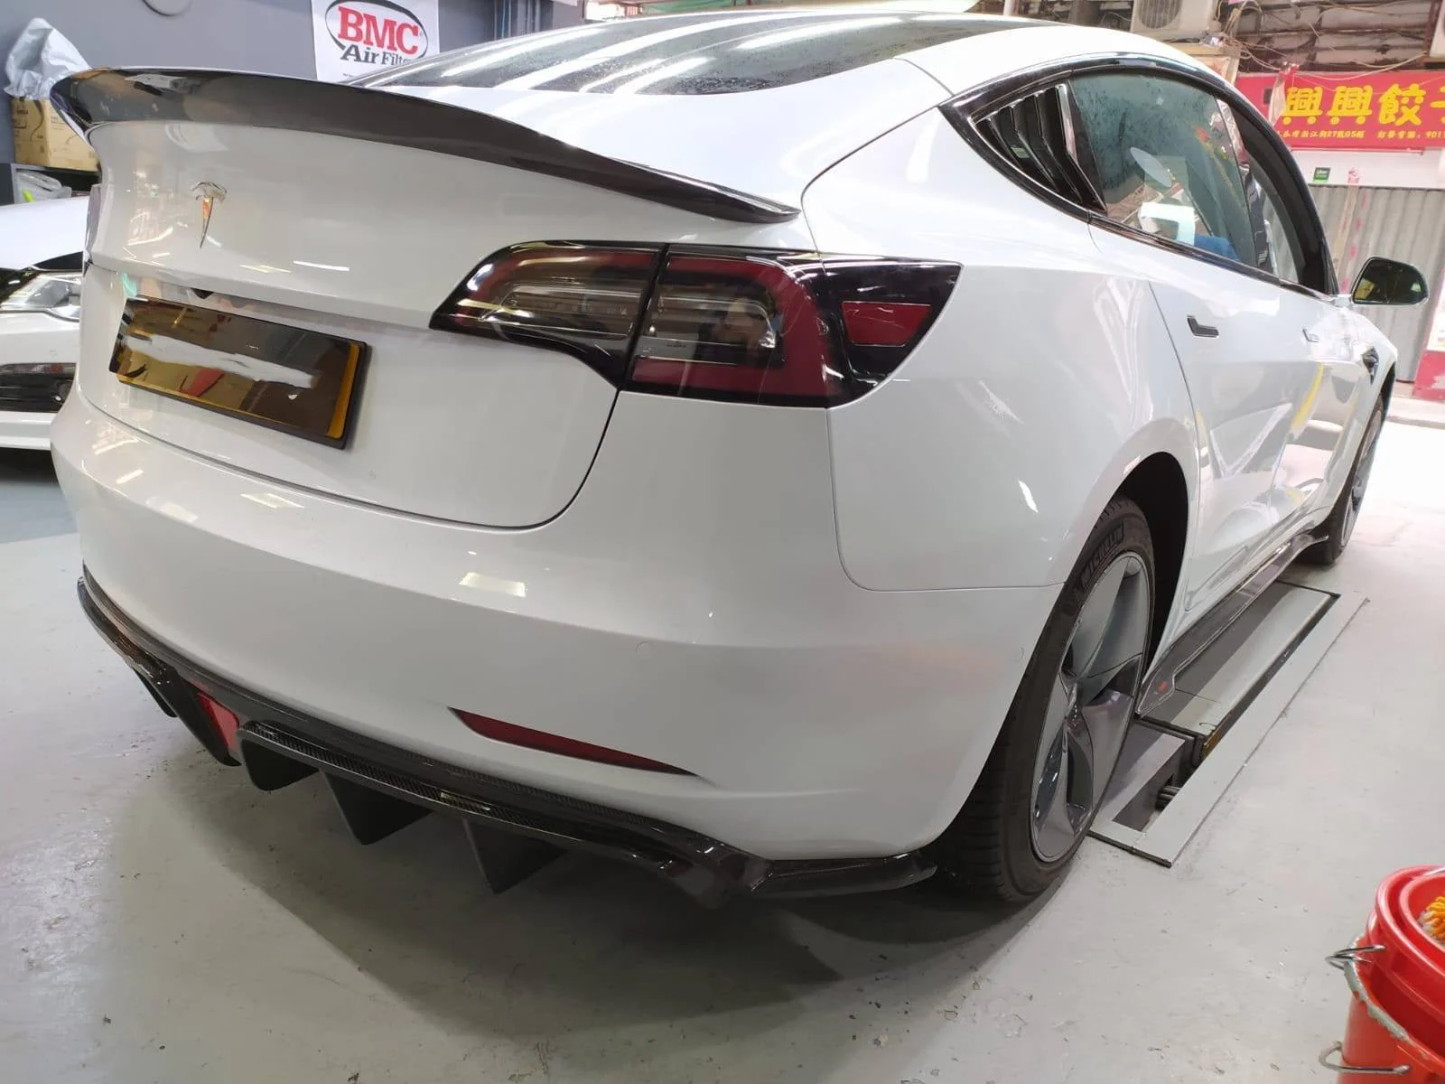 TESEVO Carbon Fiber Rear Spoiler for Model 3